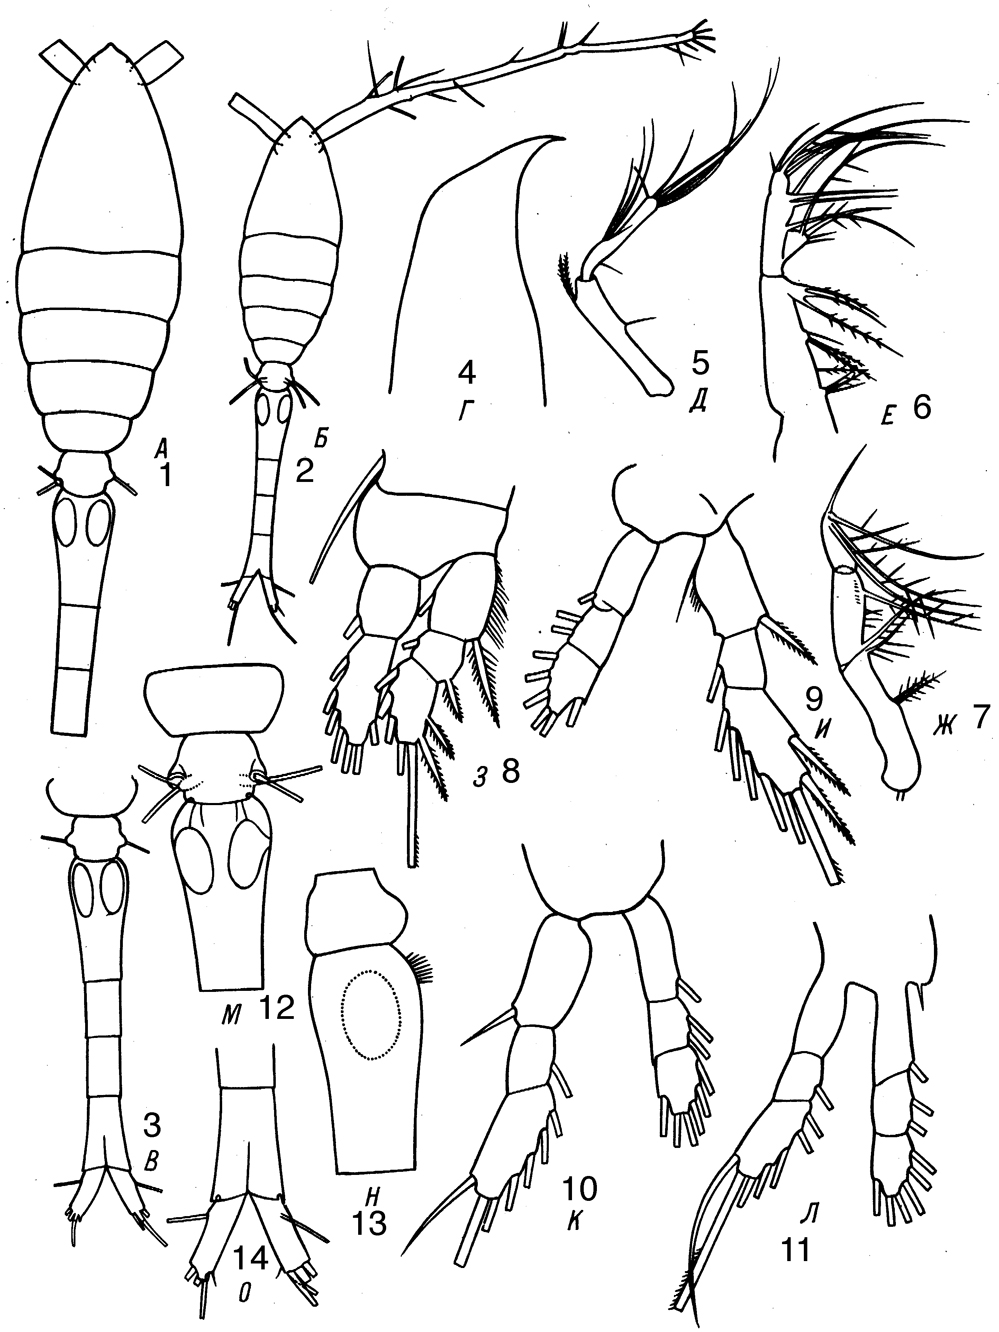 Espèce Oithona plumifera - Planche 9 de figures morphologiques